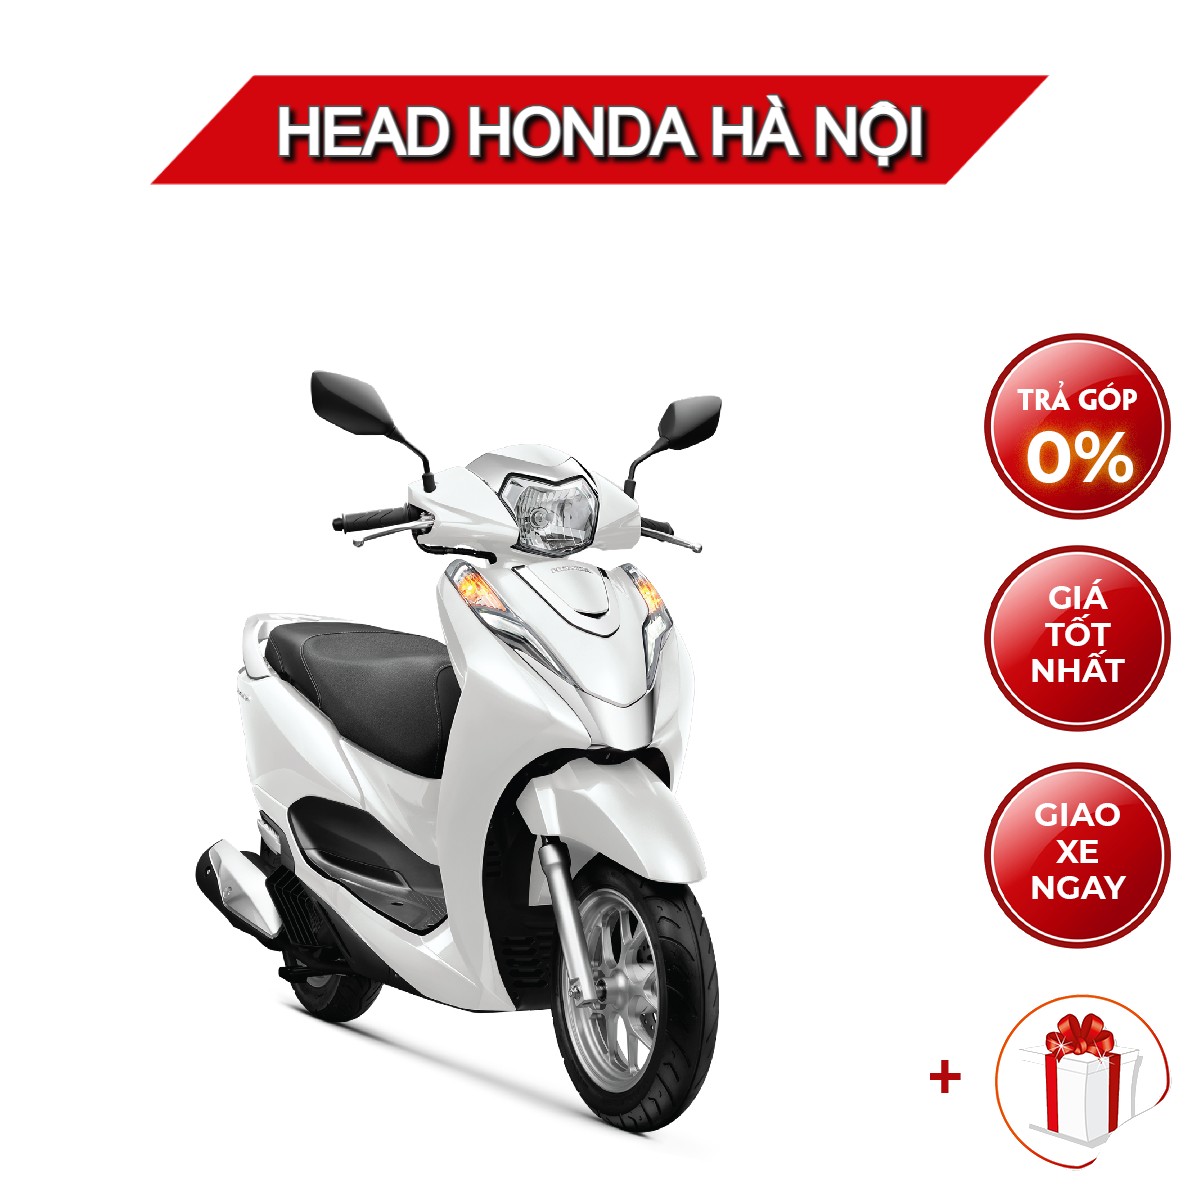 Head Honda thanh toán bằng thẻ tín dụng  Mua xe máy trả góp lãi suất 0